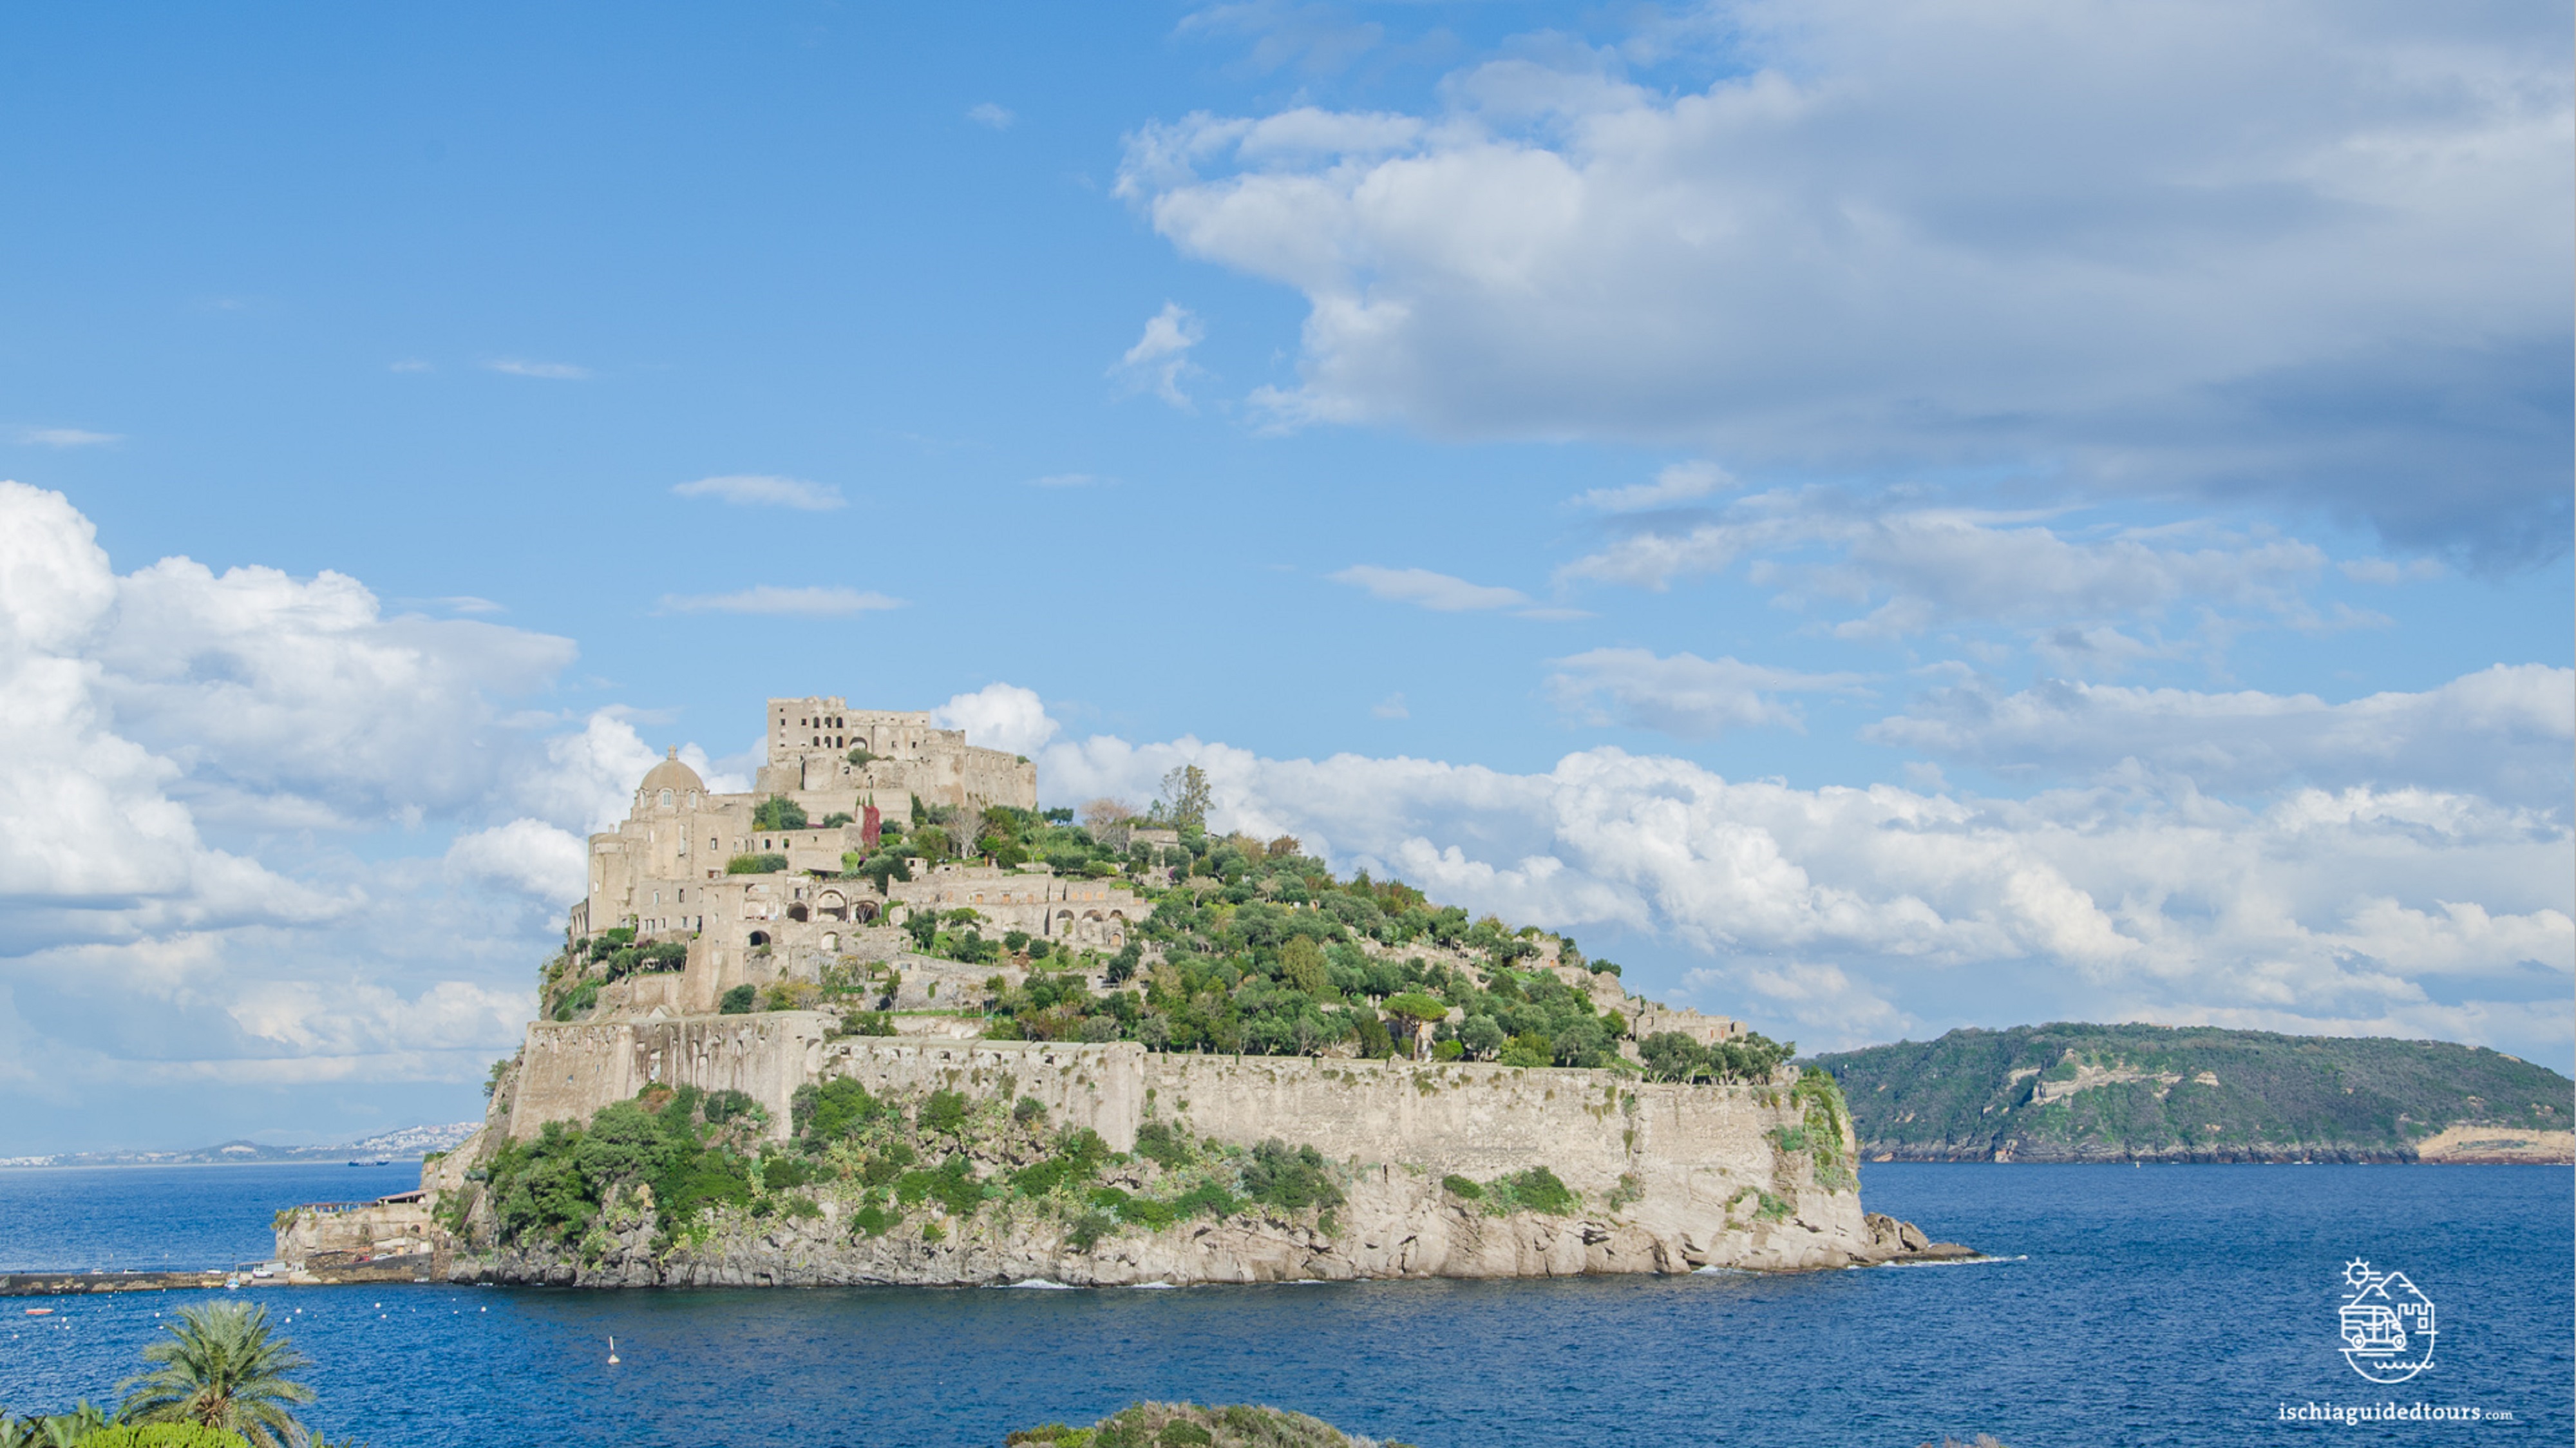 Ischia castello aragonese, Aragonese castle Ischia, Ischia Ponte, Ischia island, Cartaromana, tours of Ischia, Ischia tours, Ischia private tour, Ischia excursions, Aenaria